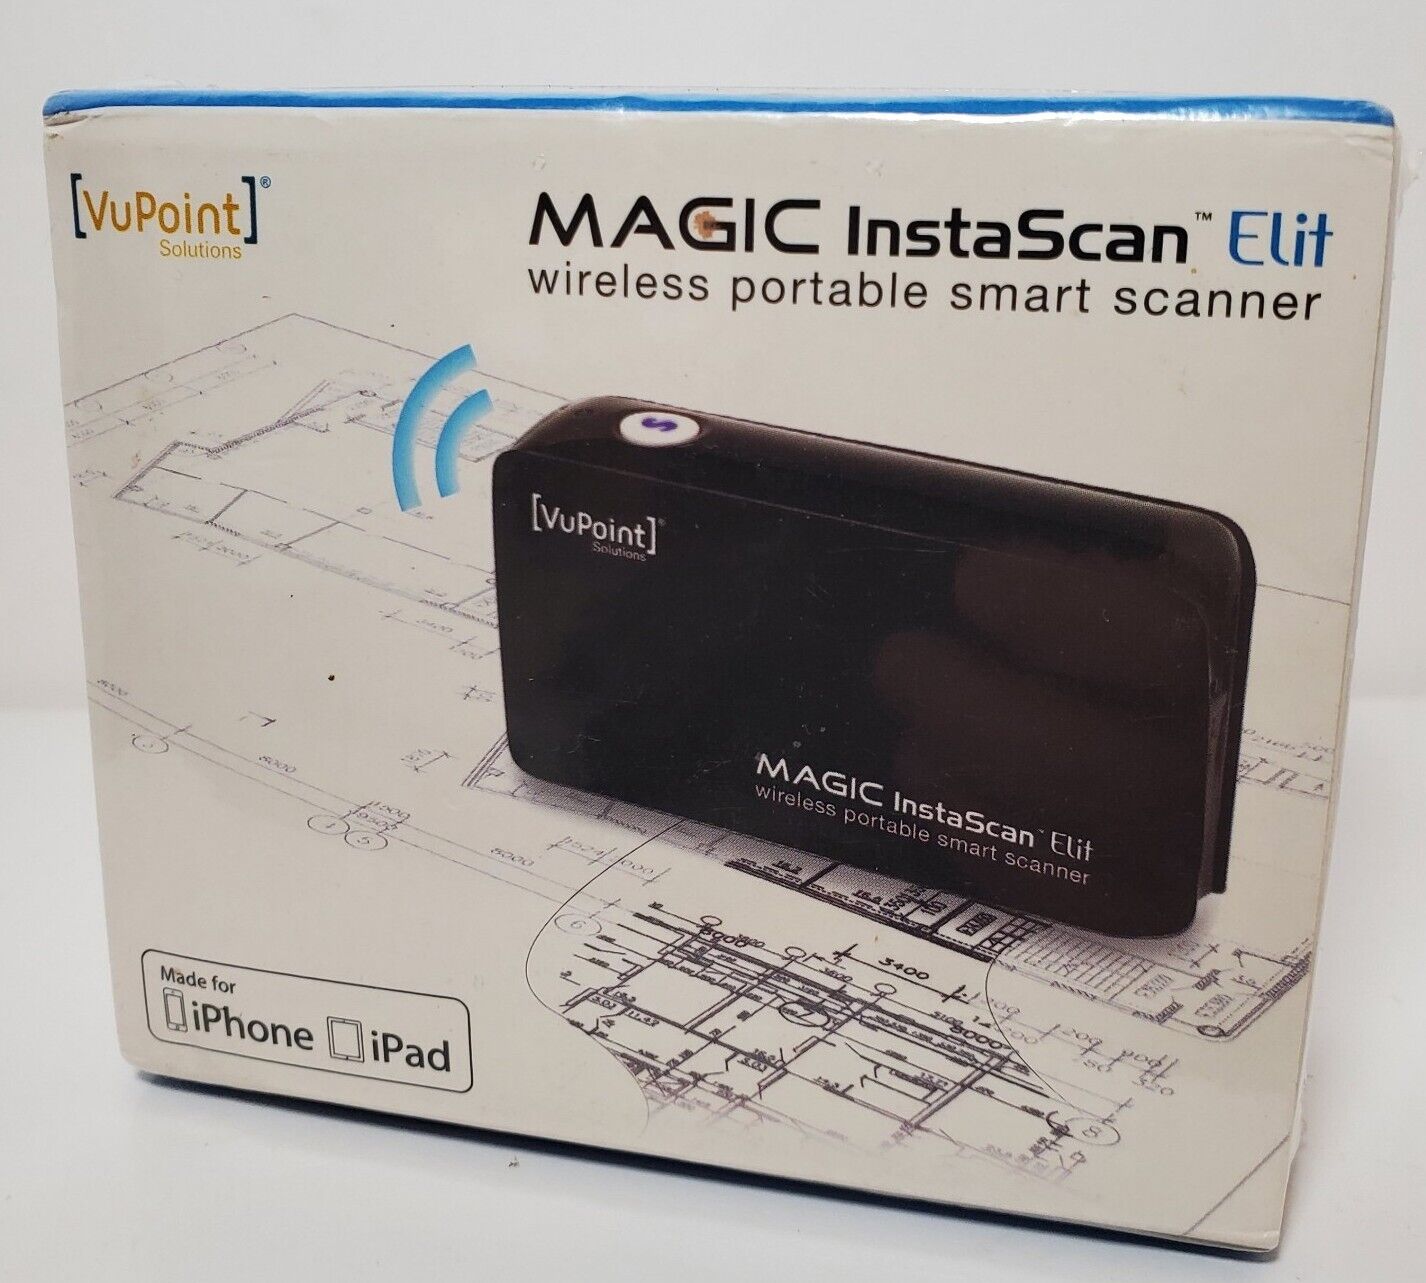 New Vupoint Magic InstaScan Elit Wireless Smart Scanner -Brand New in Sealed Pkg